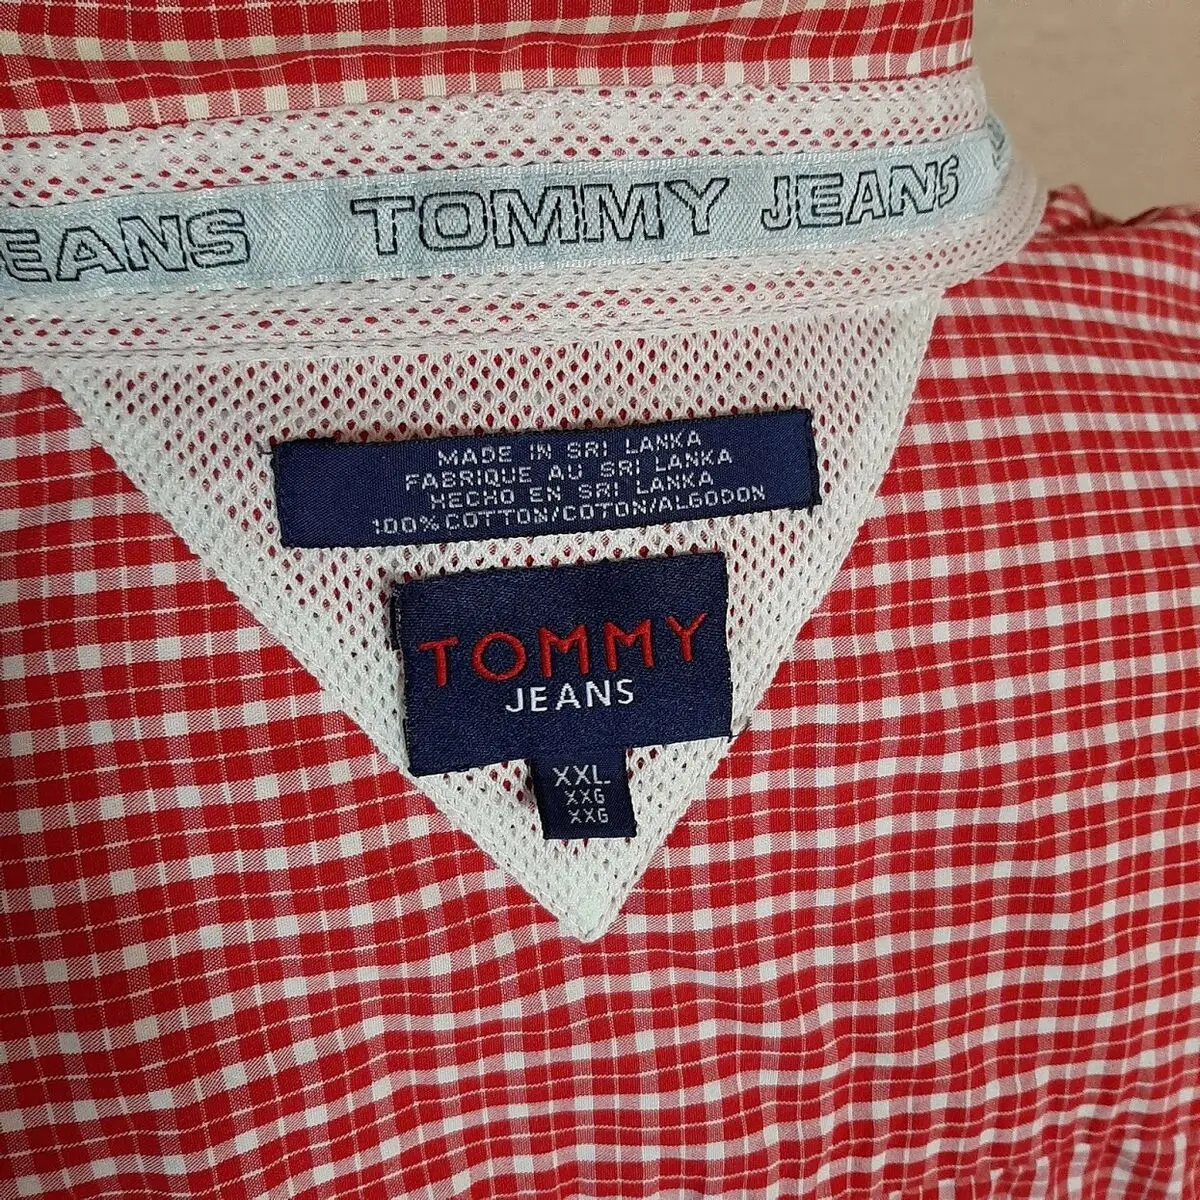 camisa tommy jeans - Qué es la marca Tommy Jeans